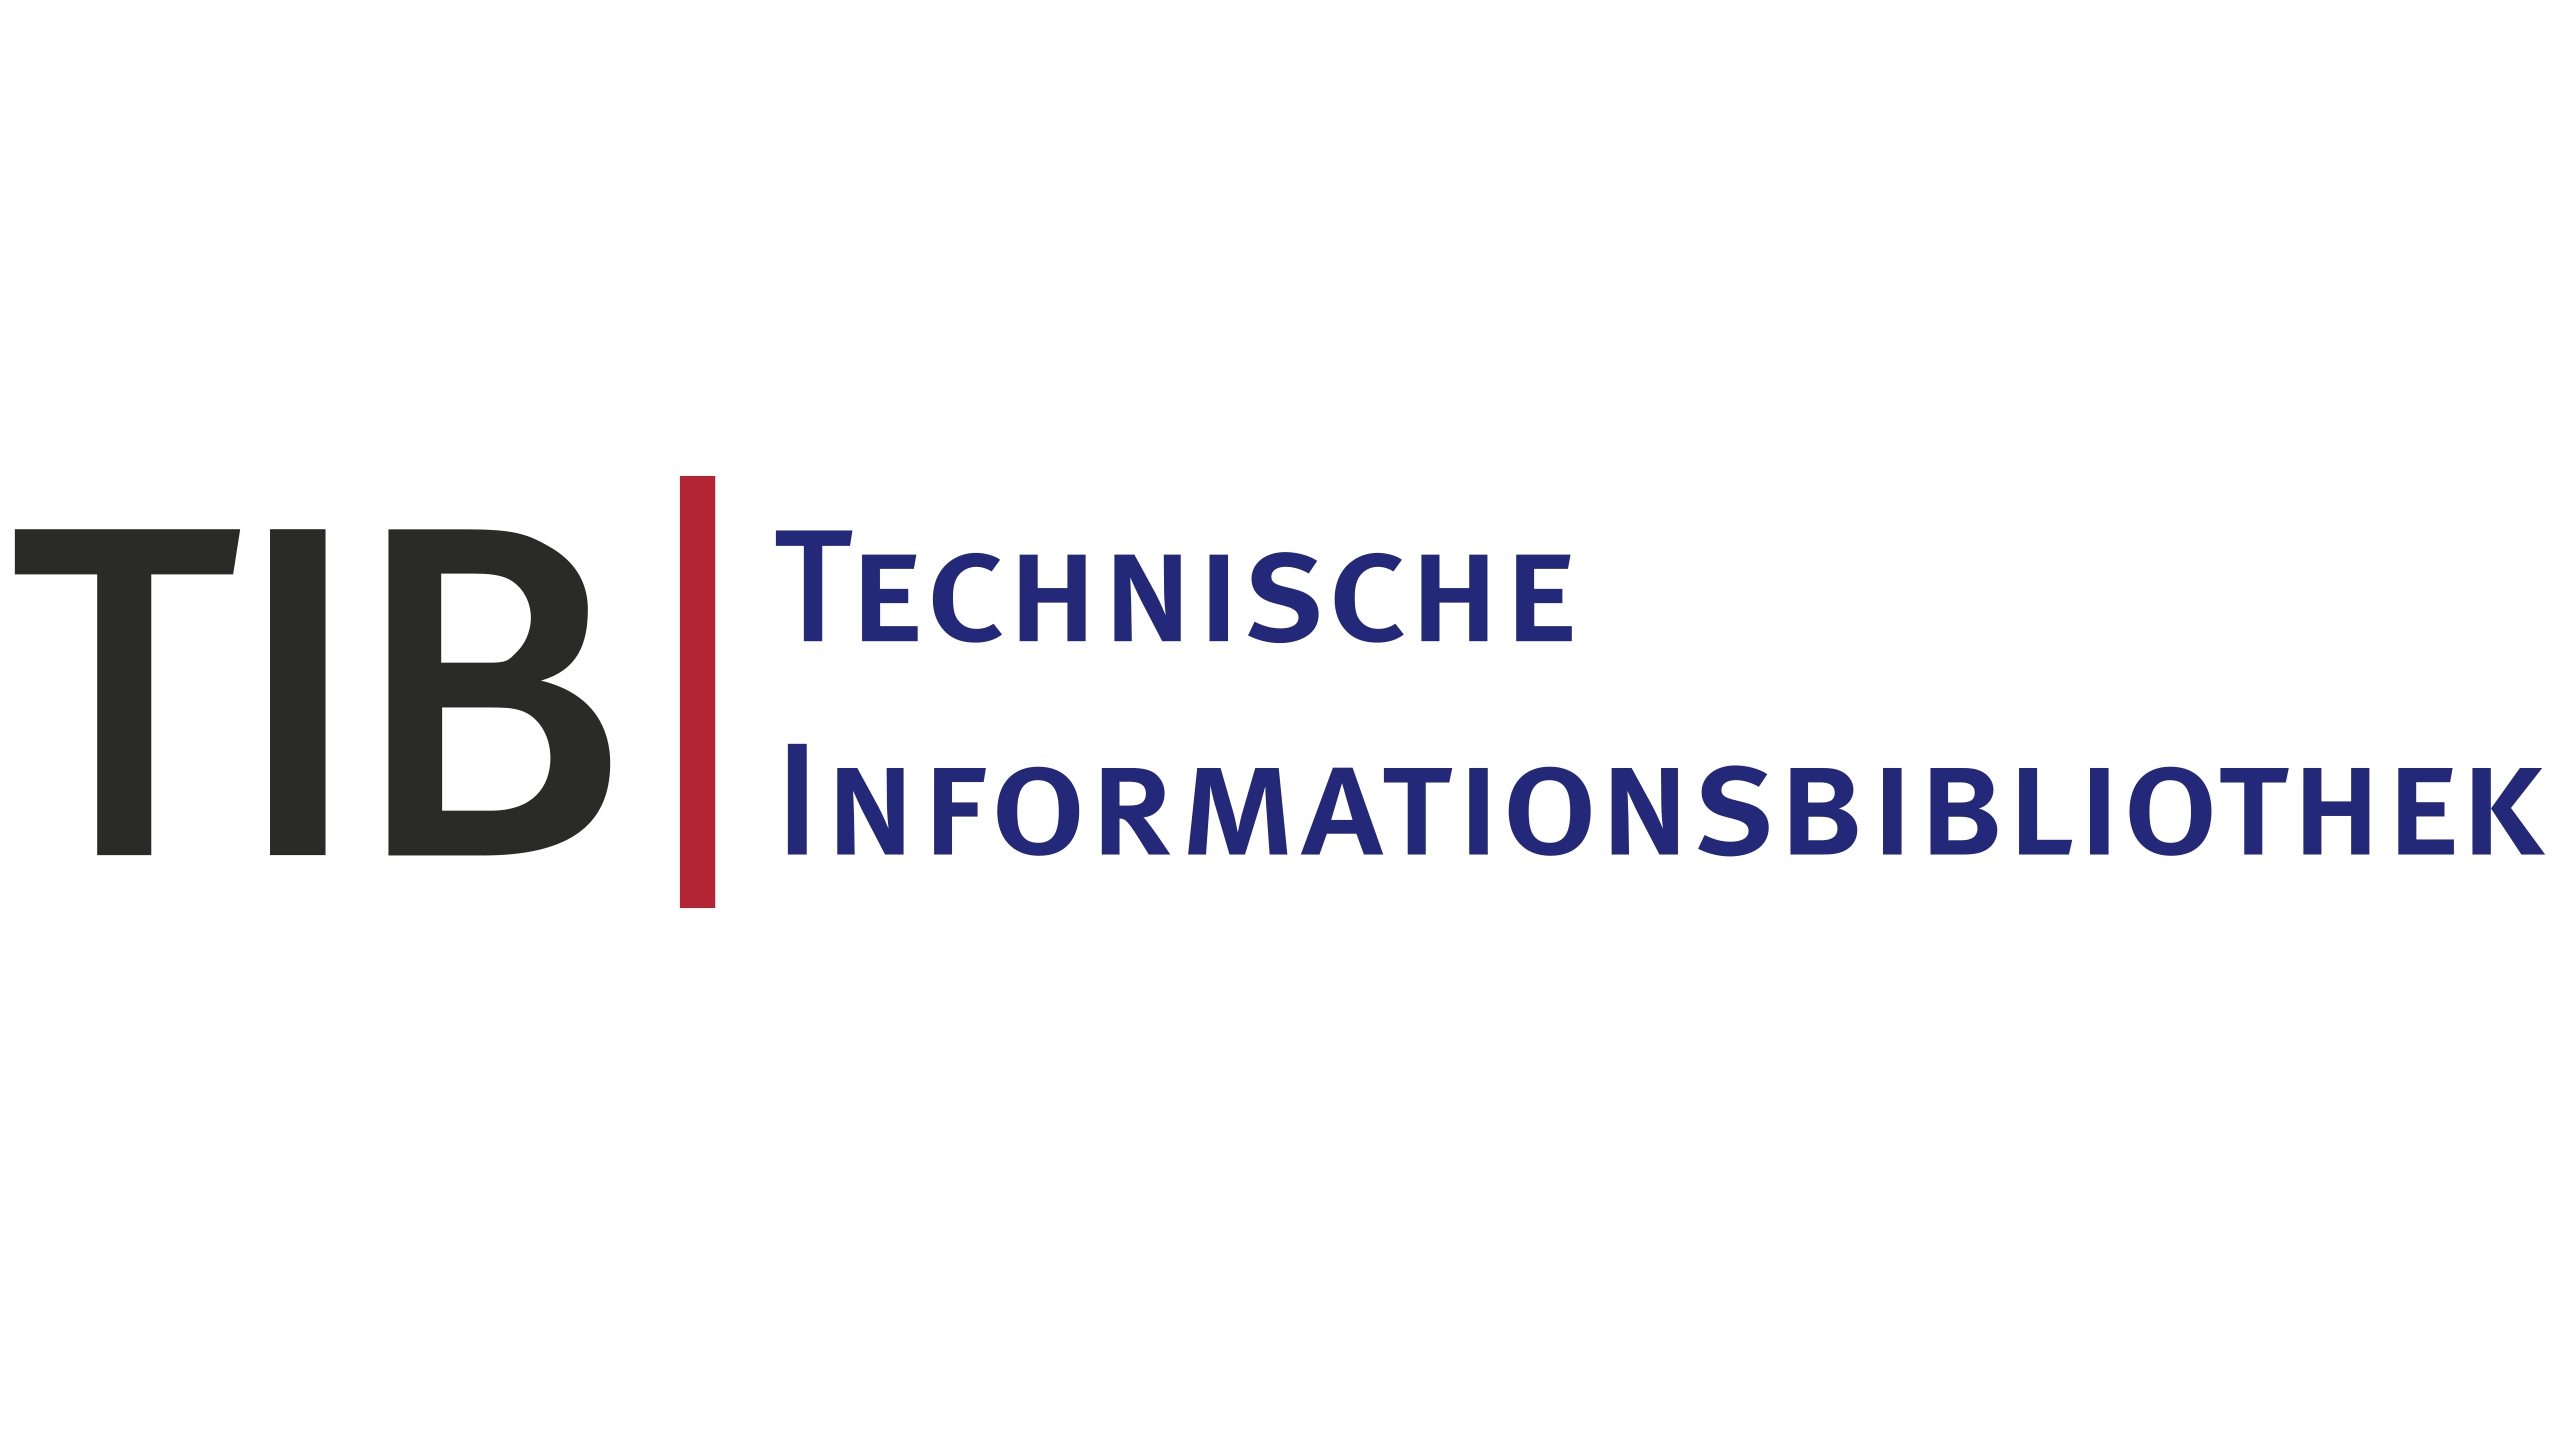 Лого TIB